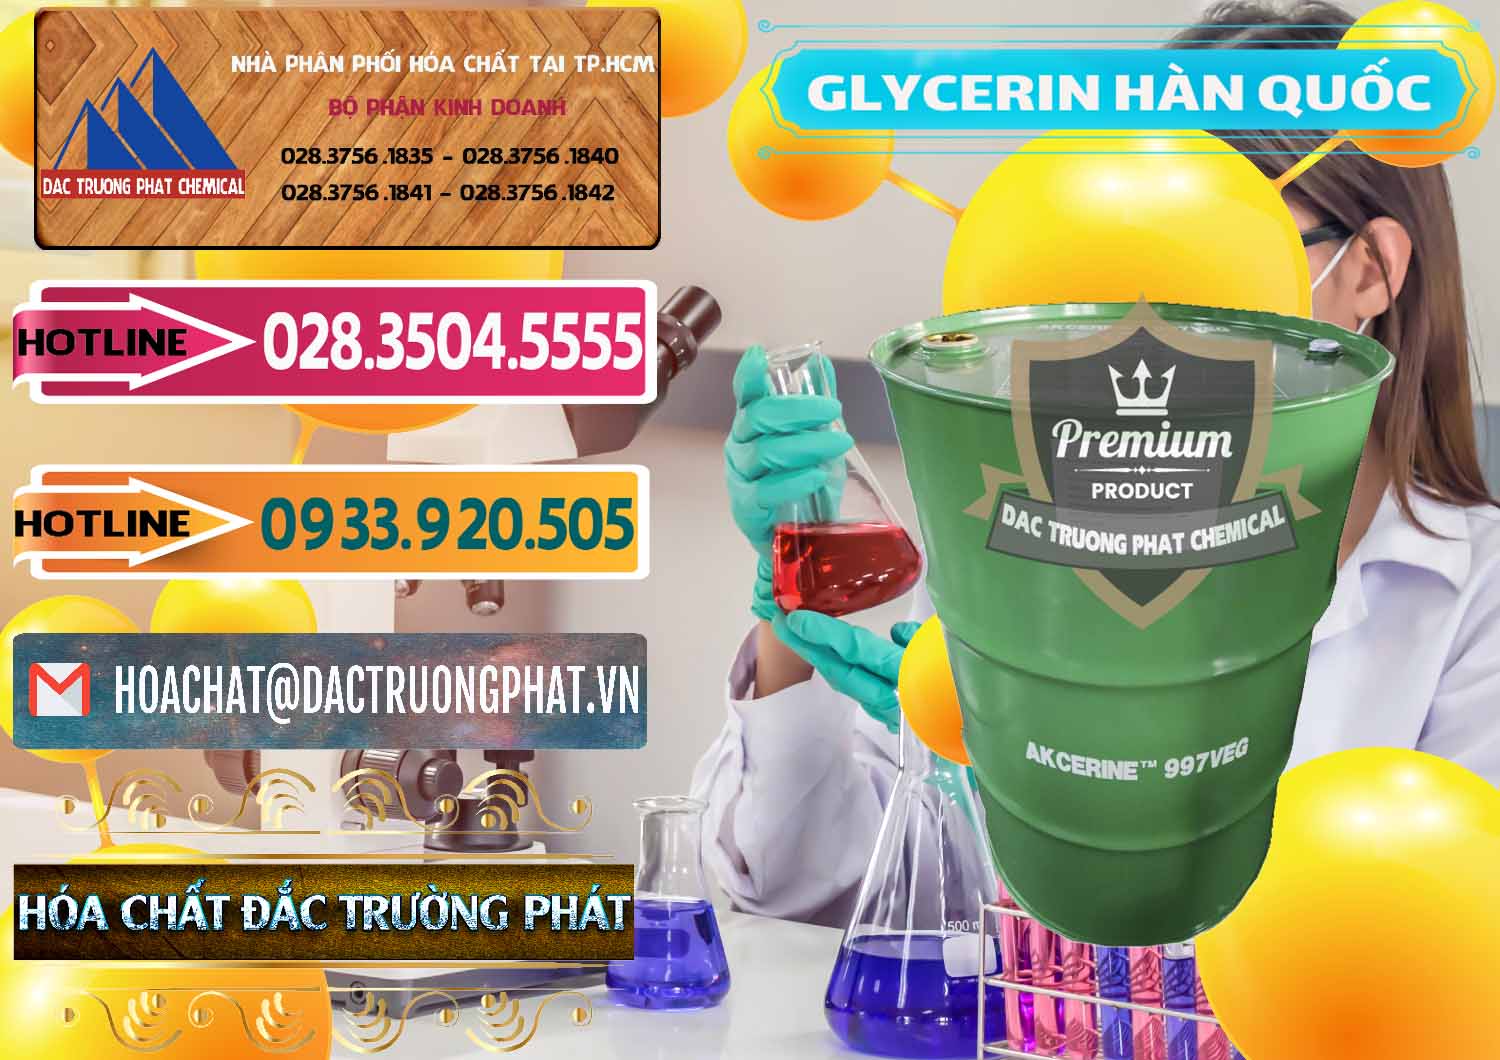 Nơi chuyên kinh doanh ( bán ) Glycerin – C3H8O3 Hàn Quốc Korea - 0403 - Công ty chuyên kinh doanh ( phân phối ) hóa chất tại TP.HCM - dactruongphat.vn